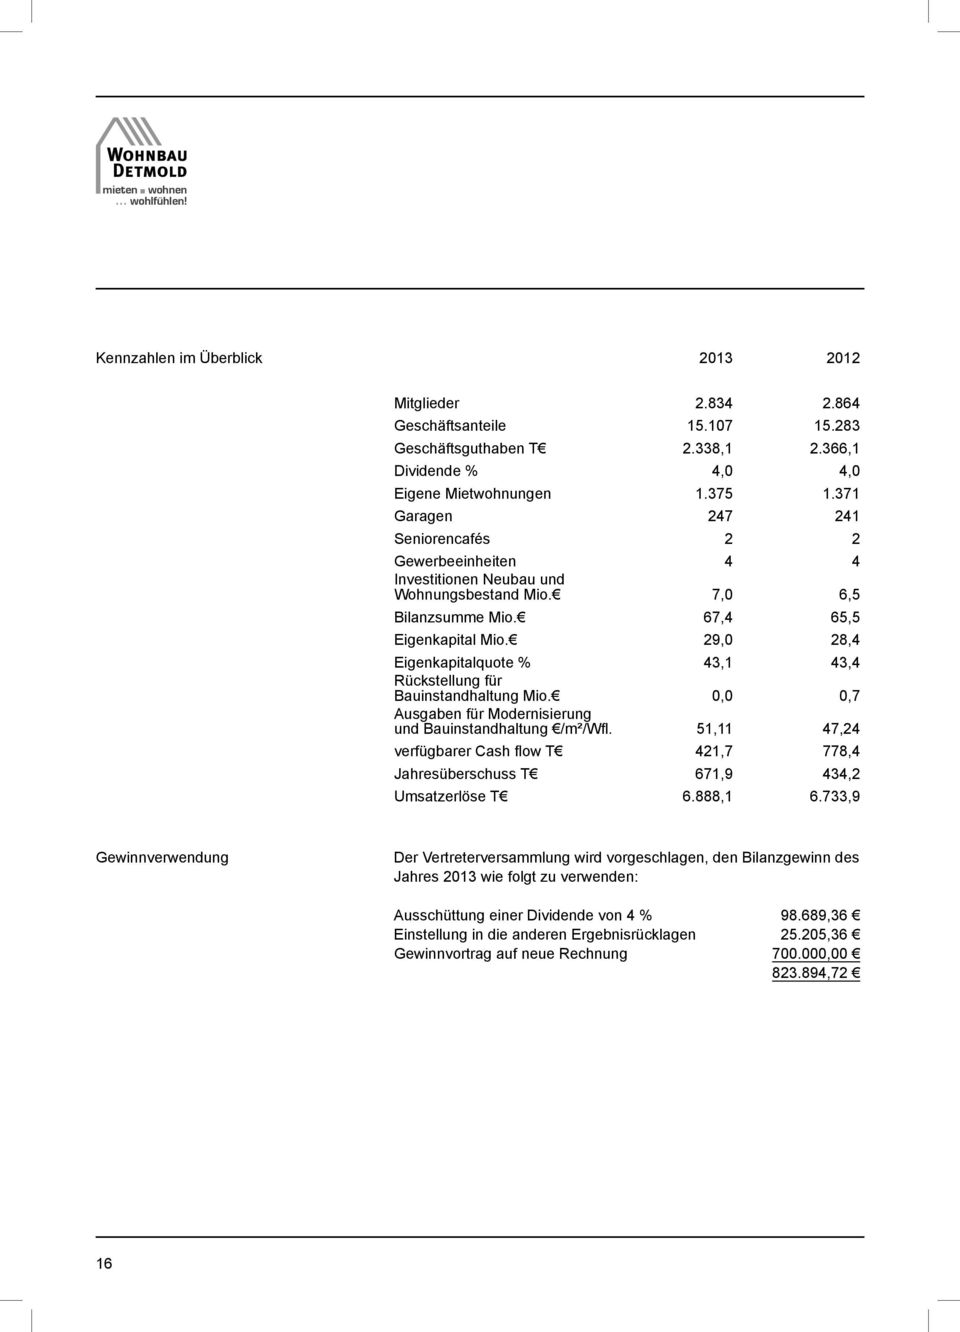 29,0 28,4 Eigenkapitalquote % 43,1 43,4 Rückstellung für Bauinstandhaltung Mio. 0,0 0,7 Ausgaben für Modernisierung und Bauinstandhaltung /m²/wfl.